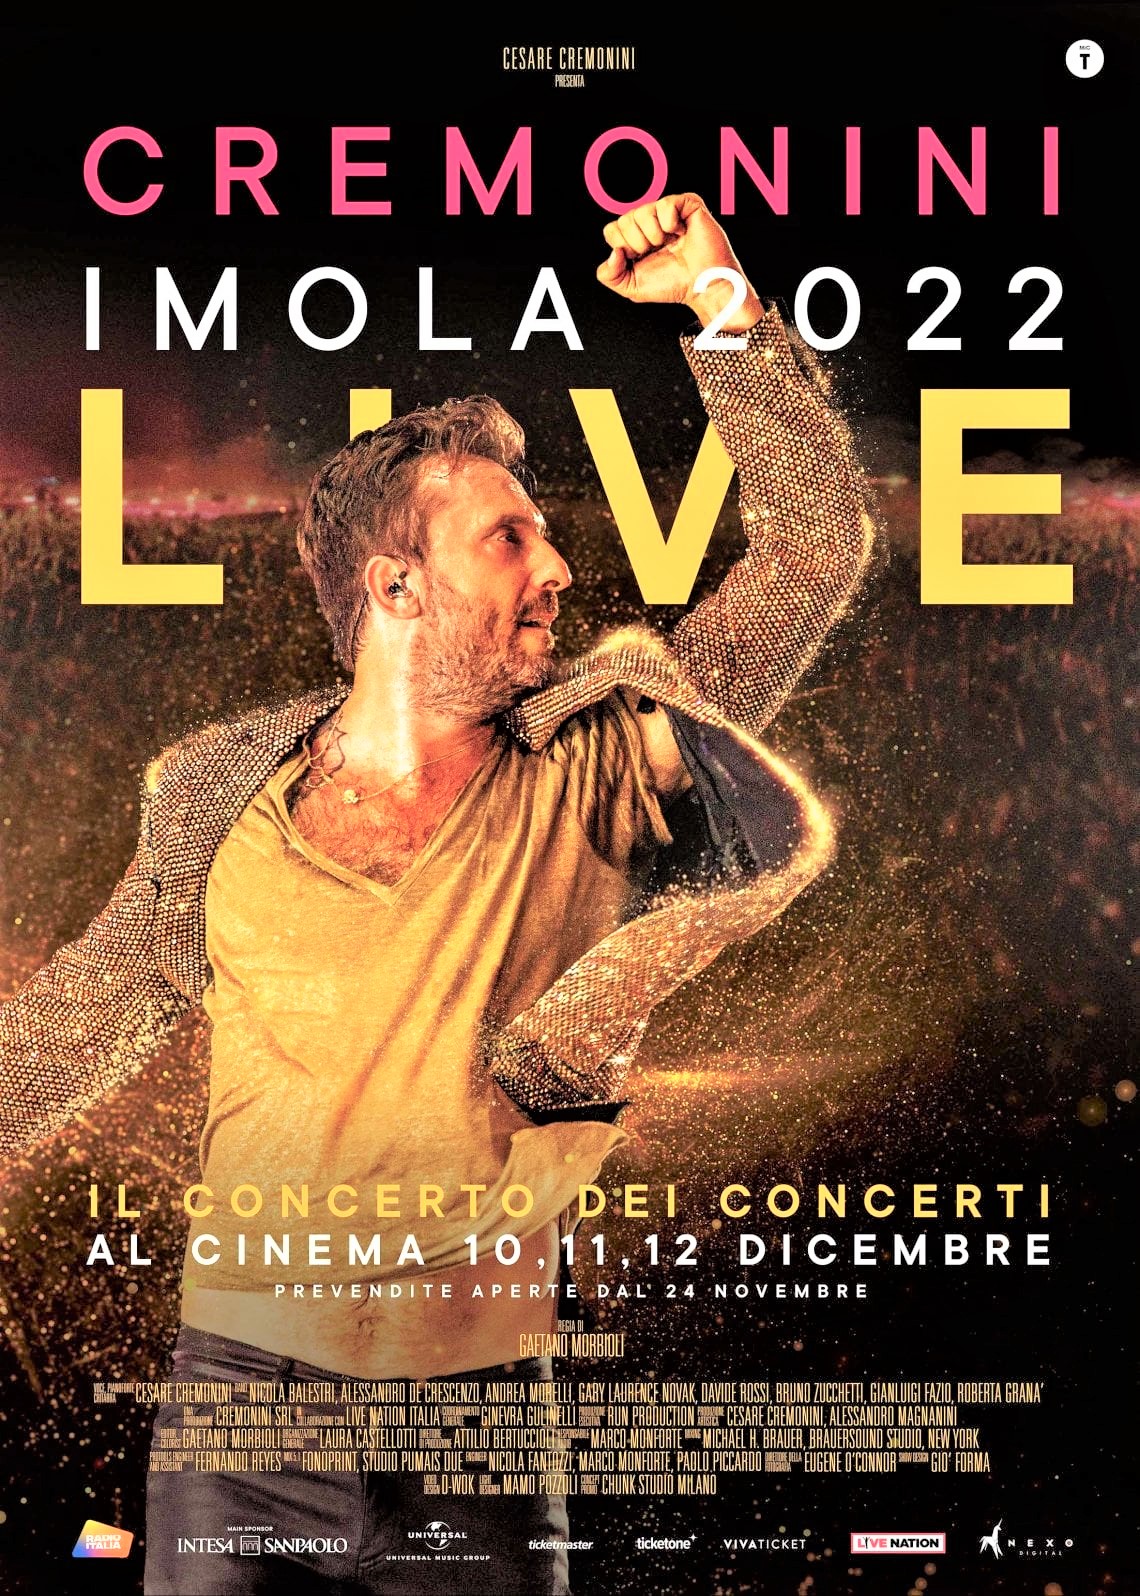 Cremonini Imola 2022 live